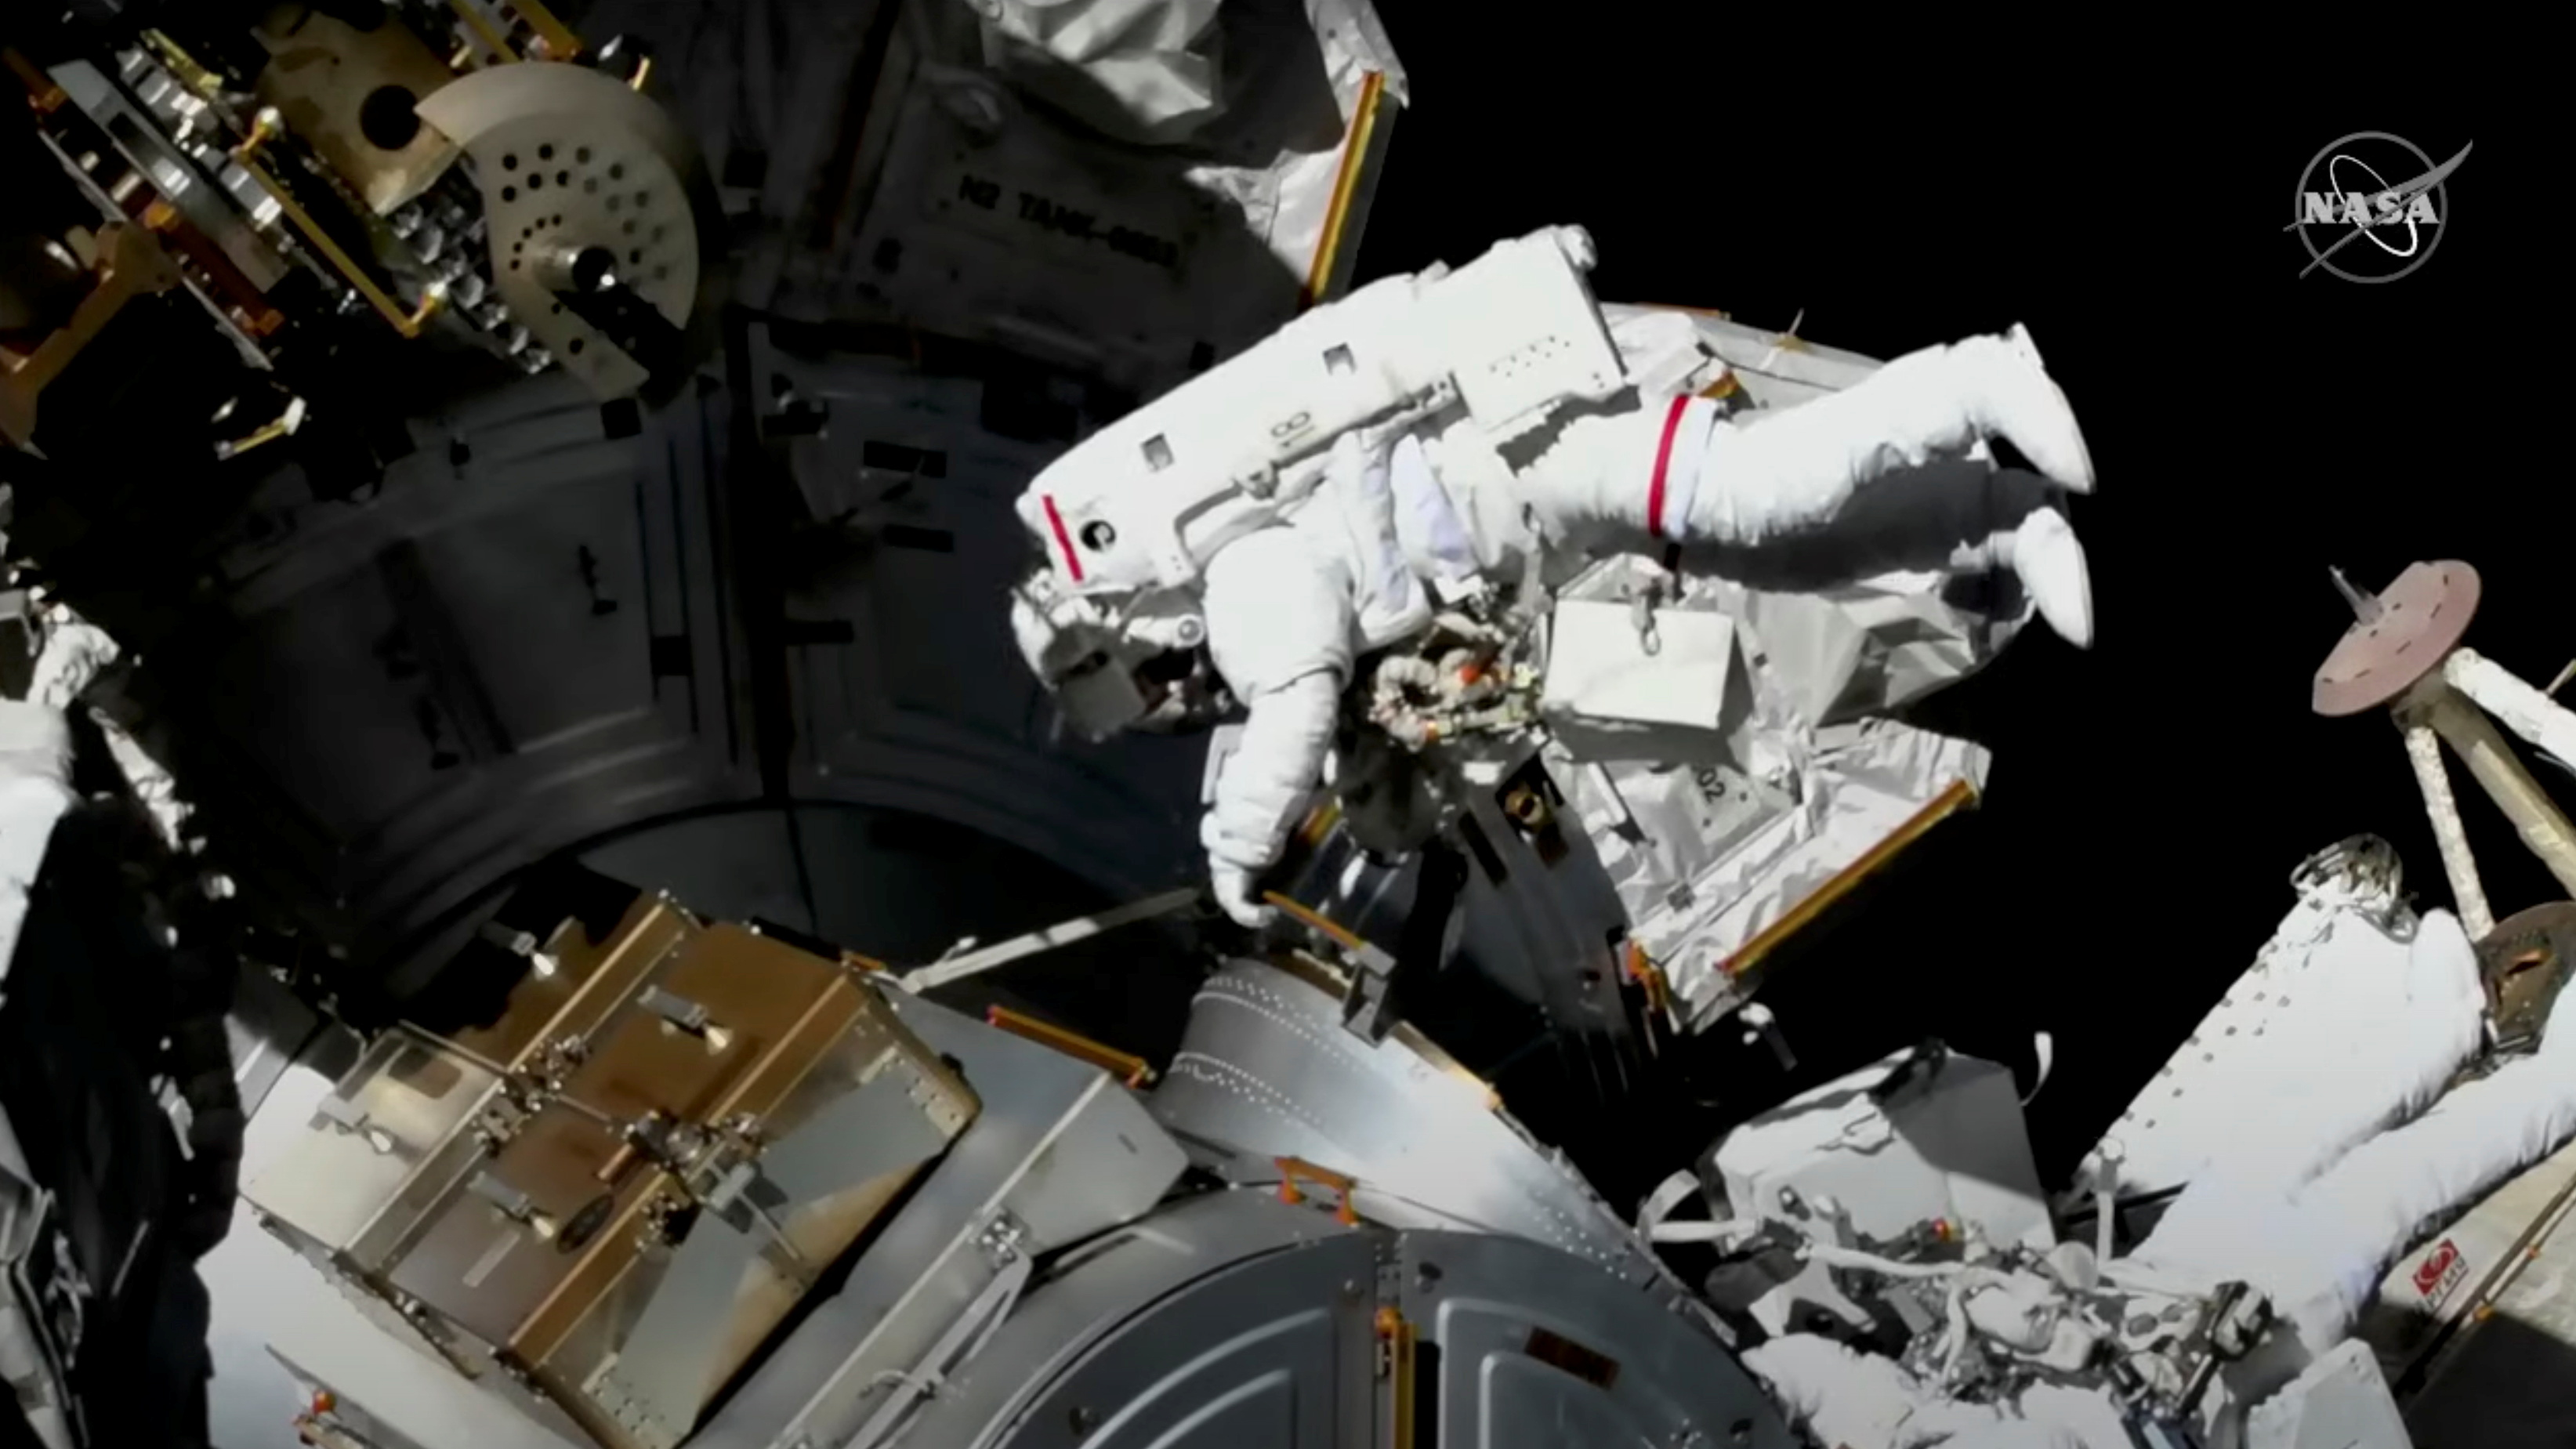 Los astronautas realizan experimentos y mantienen operativa la ISS en el espacio  (NASA TV/Handout via REUTERS)